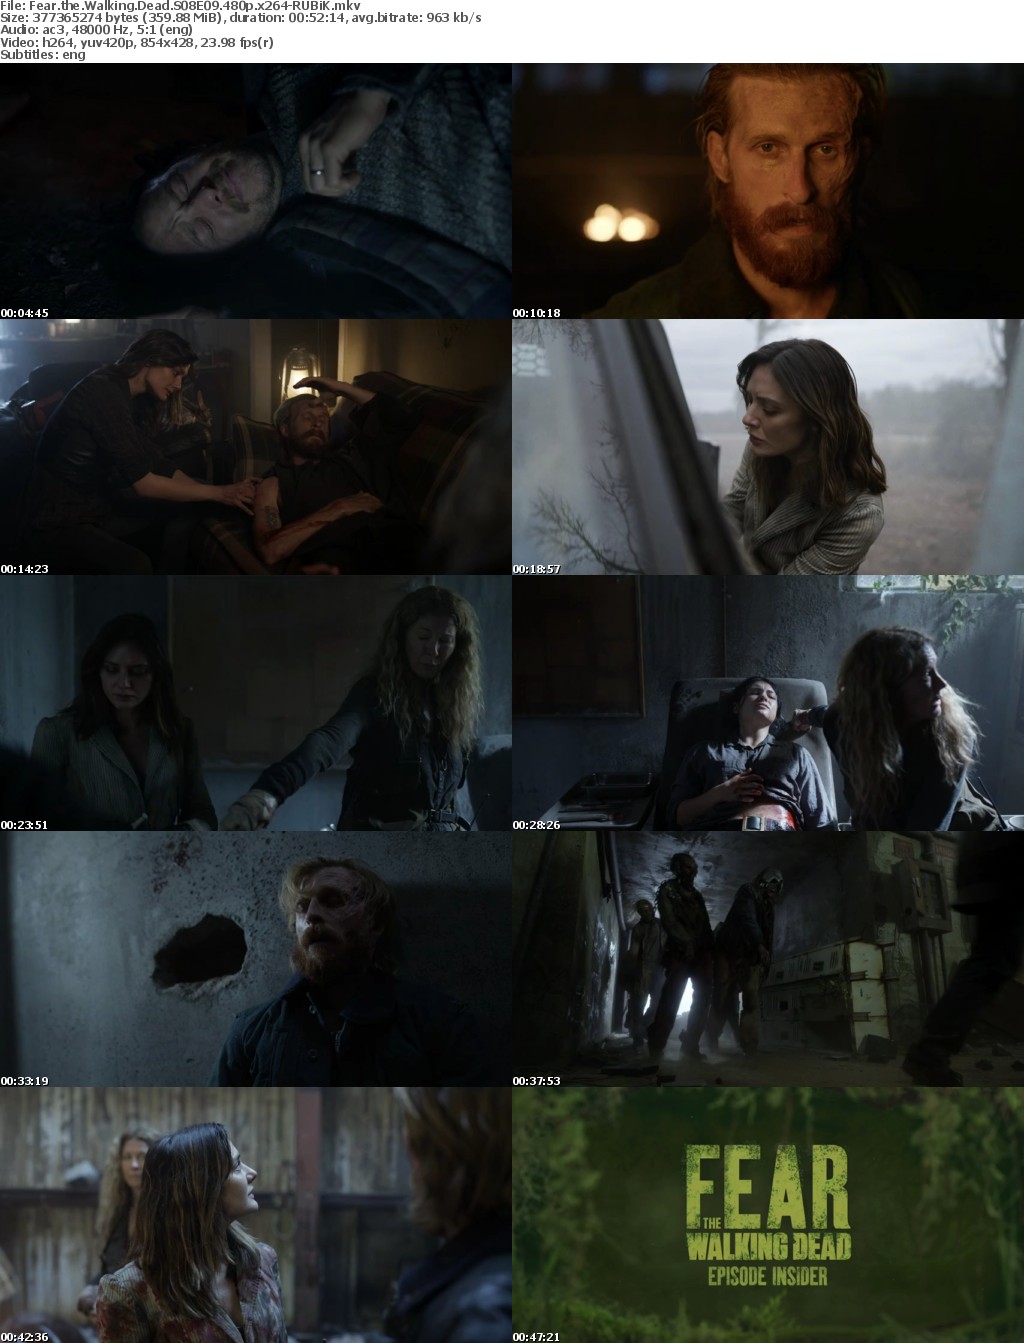 Fear the Walking Dead S08E09 480p x264-RUBiK Saturn5